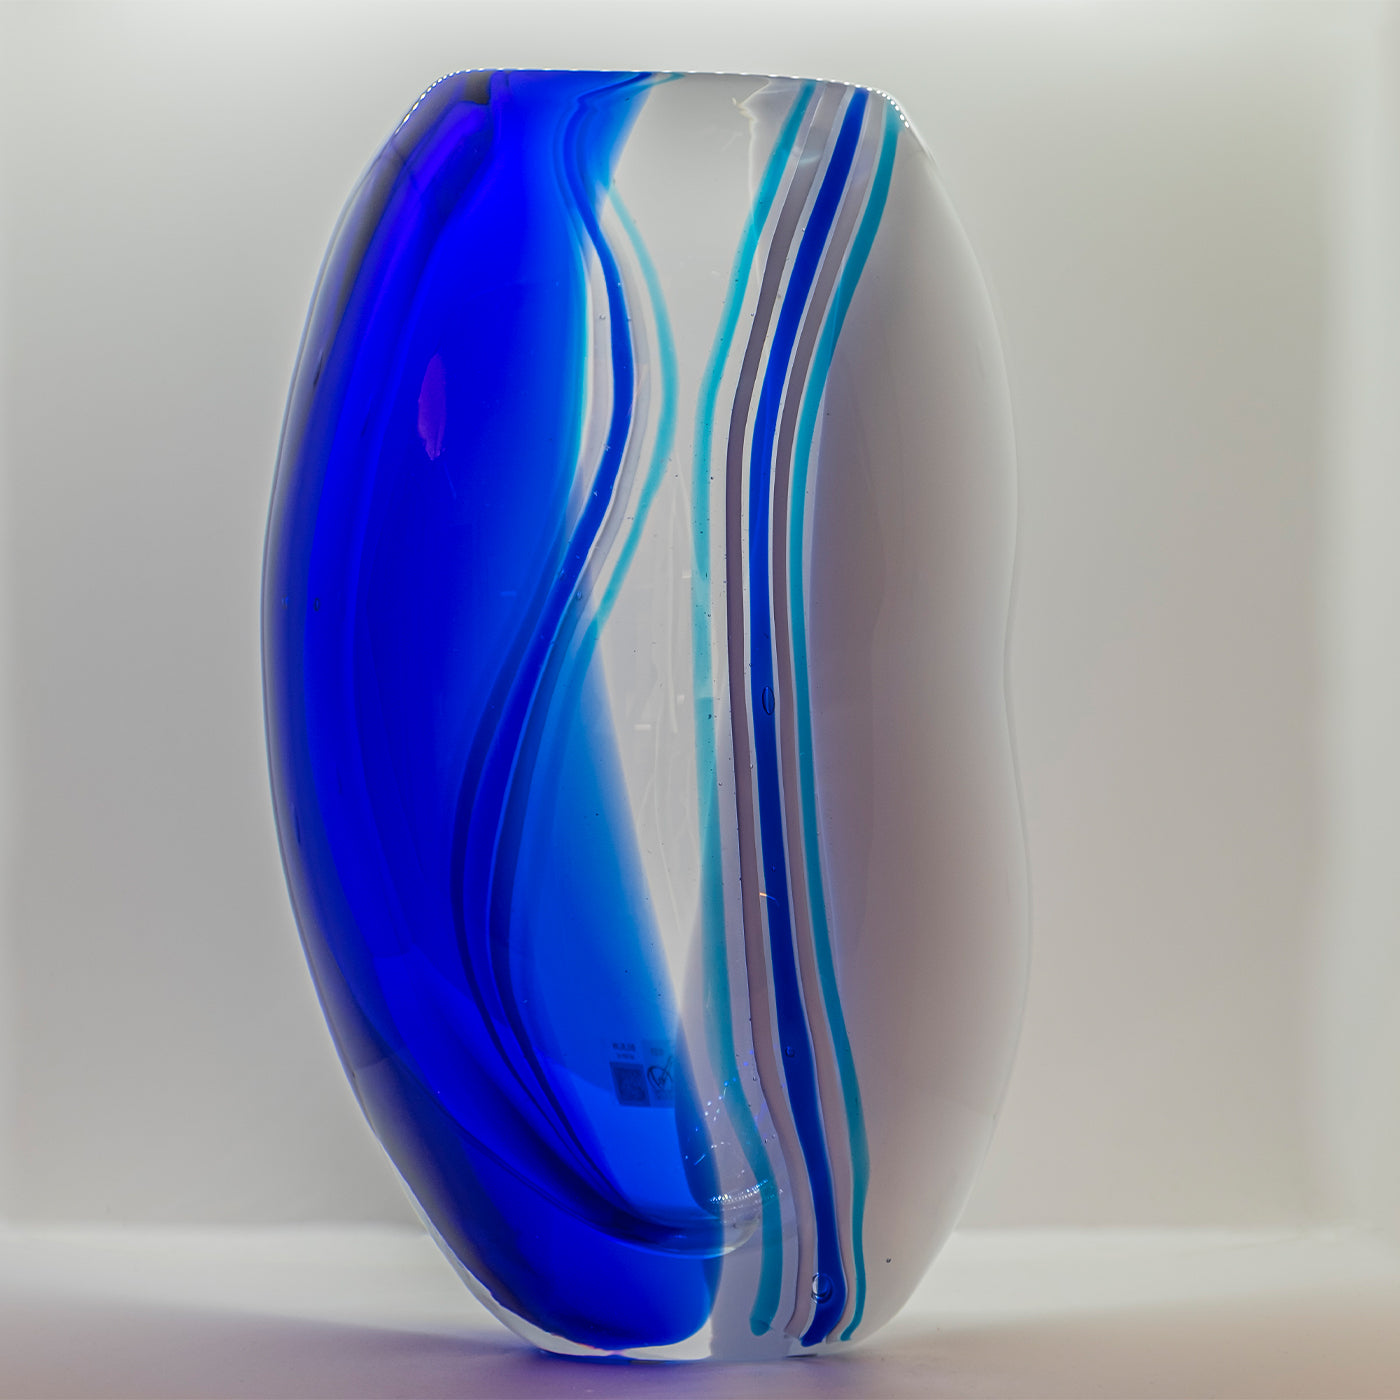 Acqua Sculpture Vase - Alternative view 1